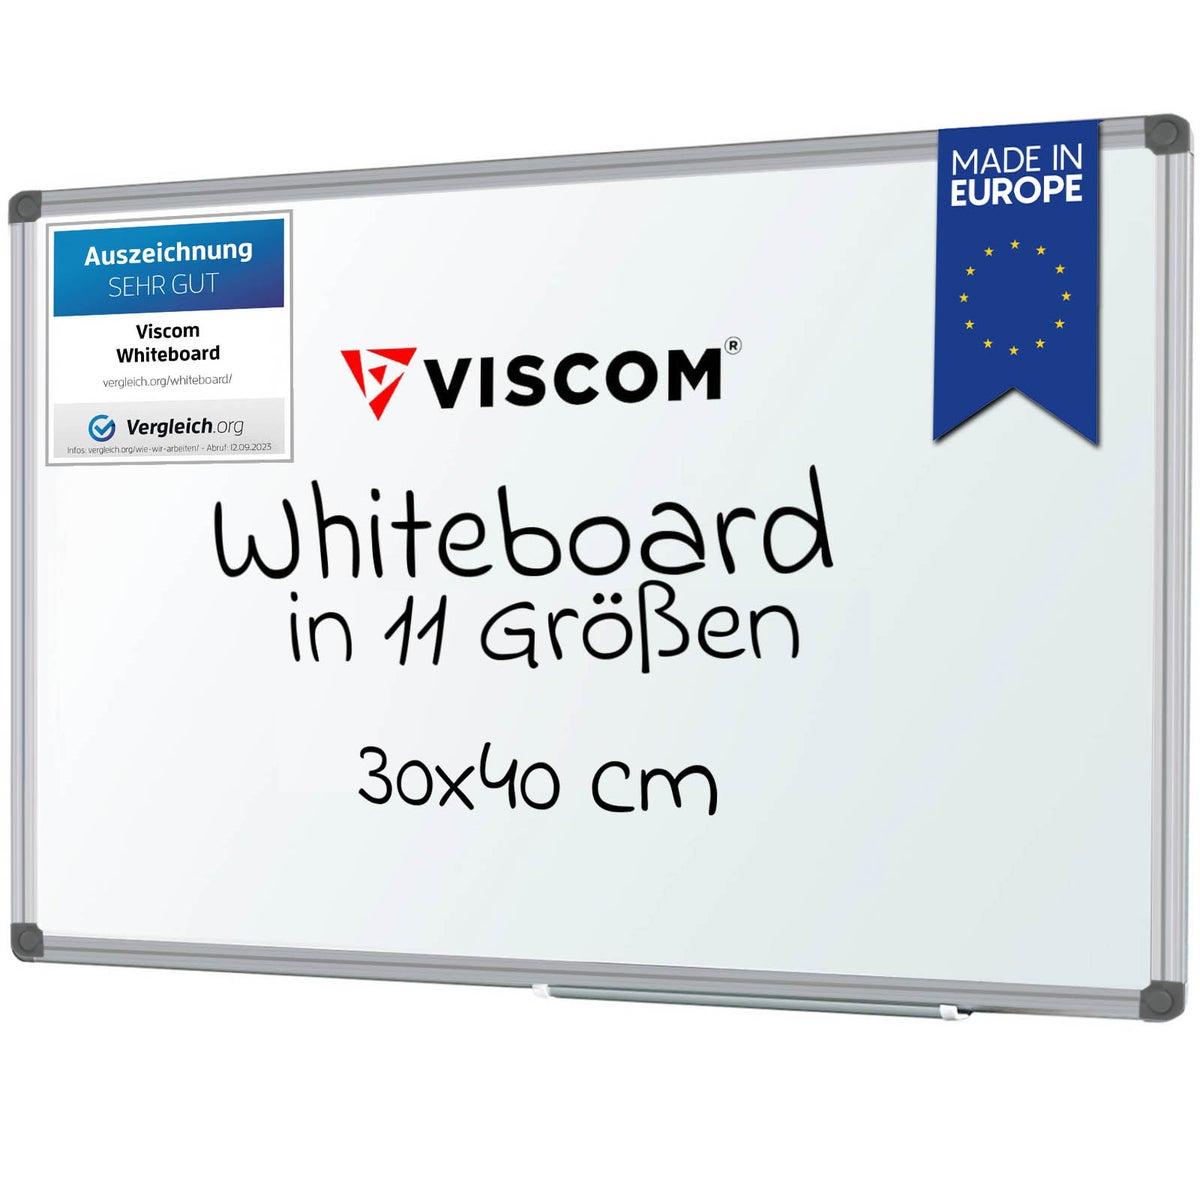 VISCOM Whiteboard magnetisch - 30 x 40 cm - Magnettafel für Büro & Zuhause - Magnetwand kratzfest & beschreibbar - mit Aluminium-Rahmen - für Hoch- und Querformat